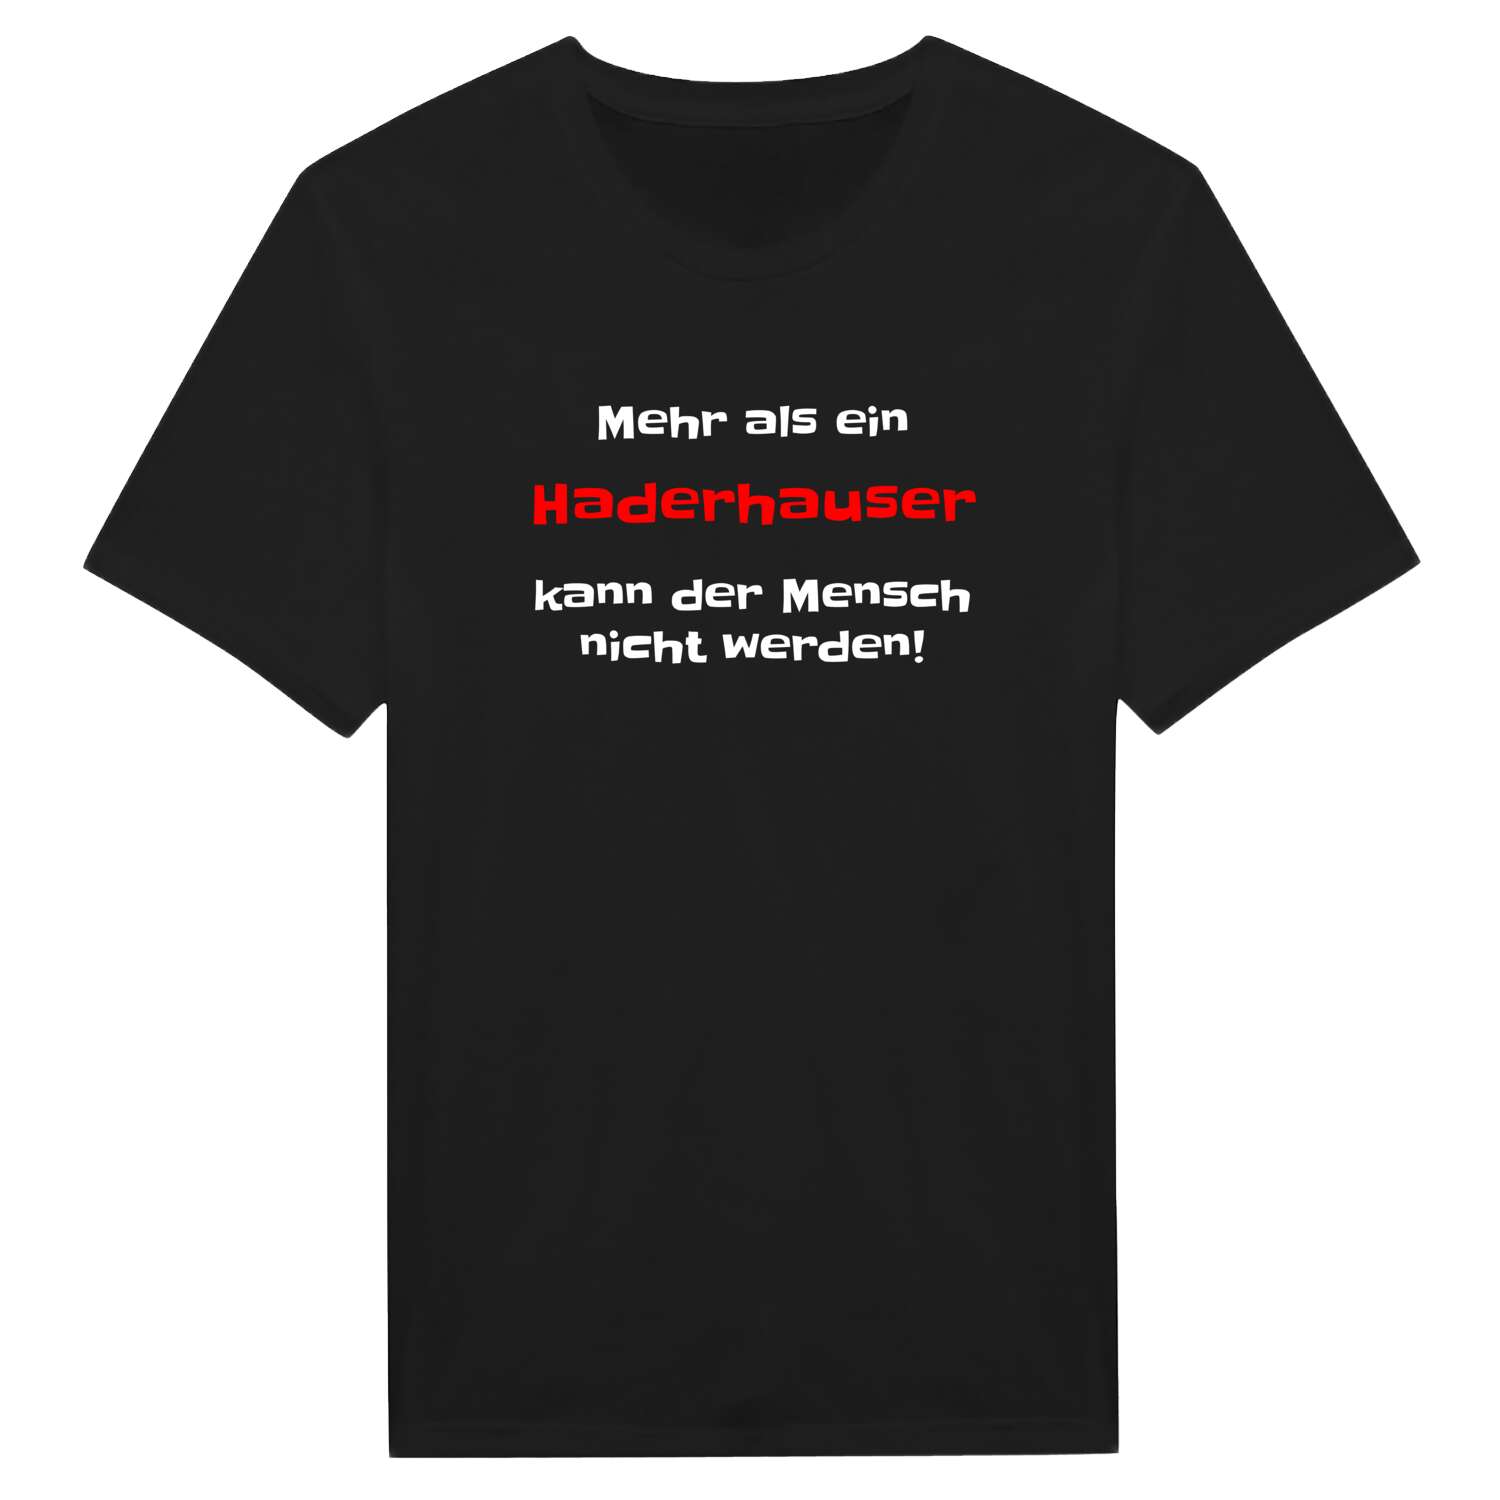 Haderhaus T-Shirt »Mehr als ein«